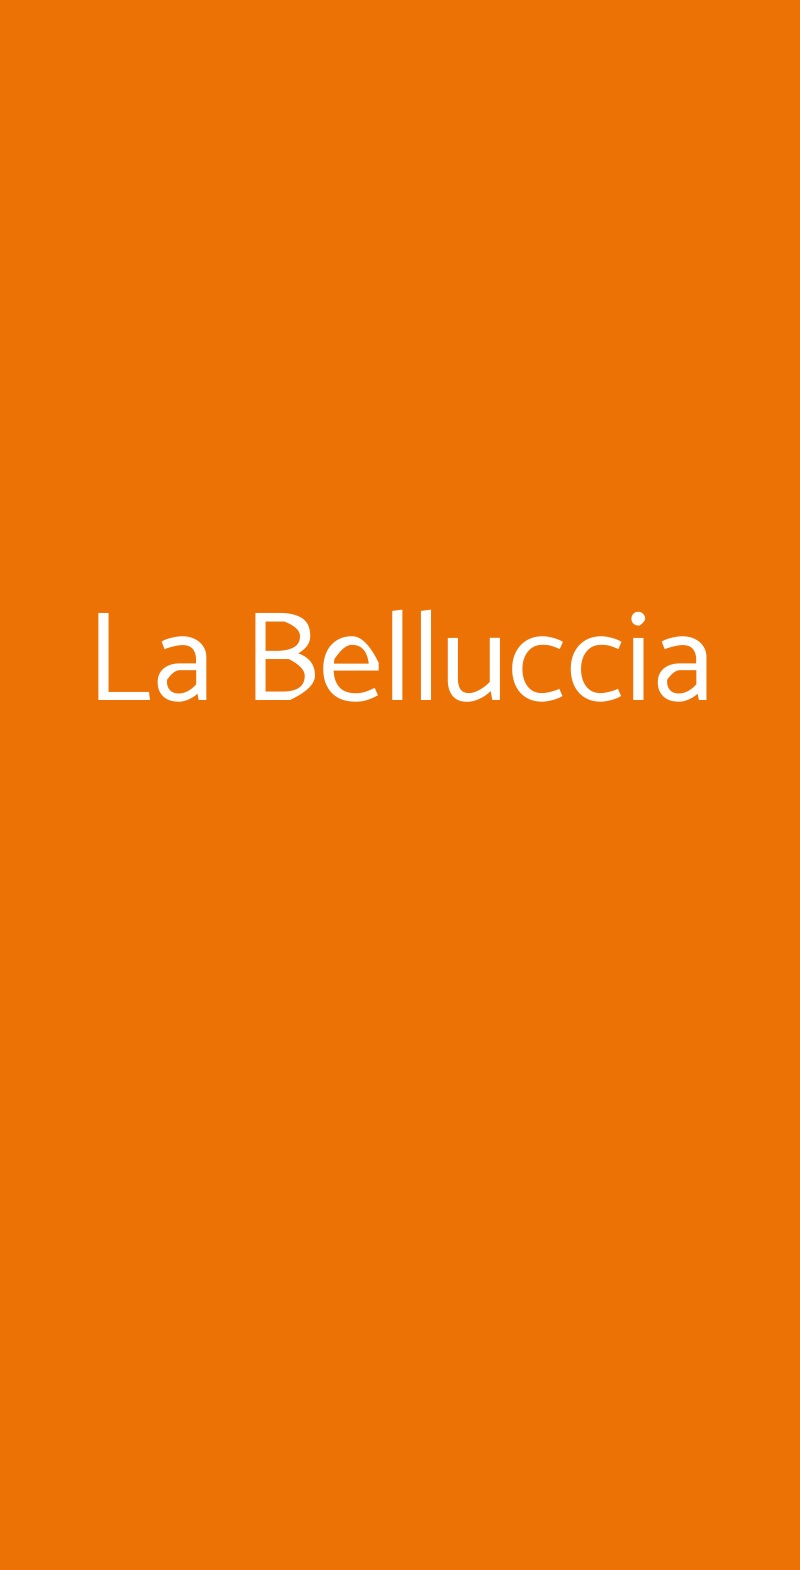 La Belluccia Serravalle Pistoiese menù 1 pagina